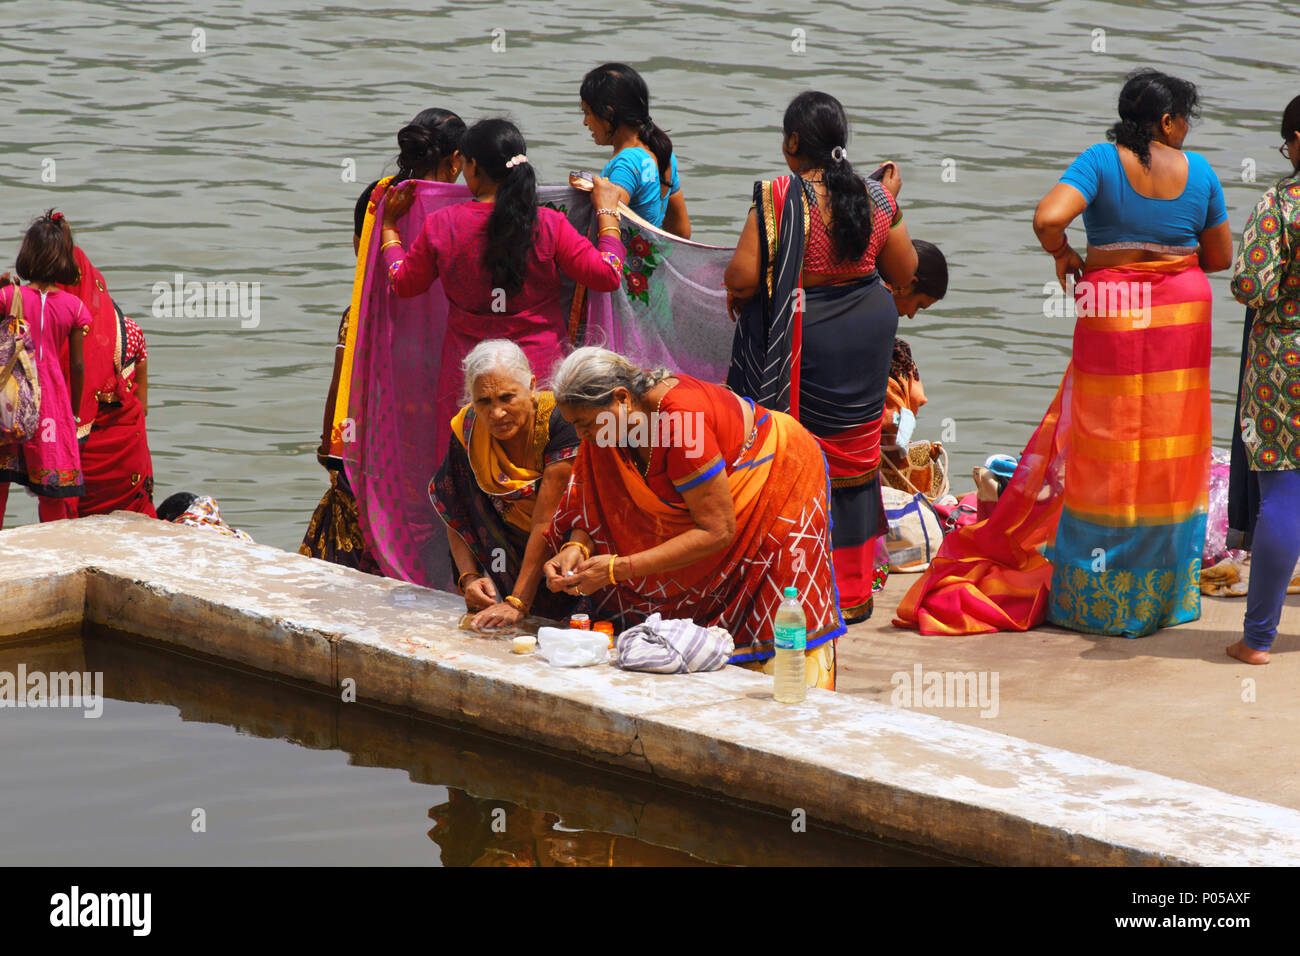 Pushkar, Indien - 15. August 2016: Frauen in bunten Saris vorbereiten für heiliges Bad im See. Pushkar See ist eine der heiligsten Ort für Hindus. Stockfoto